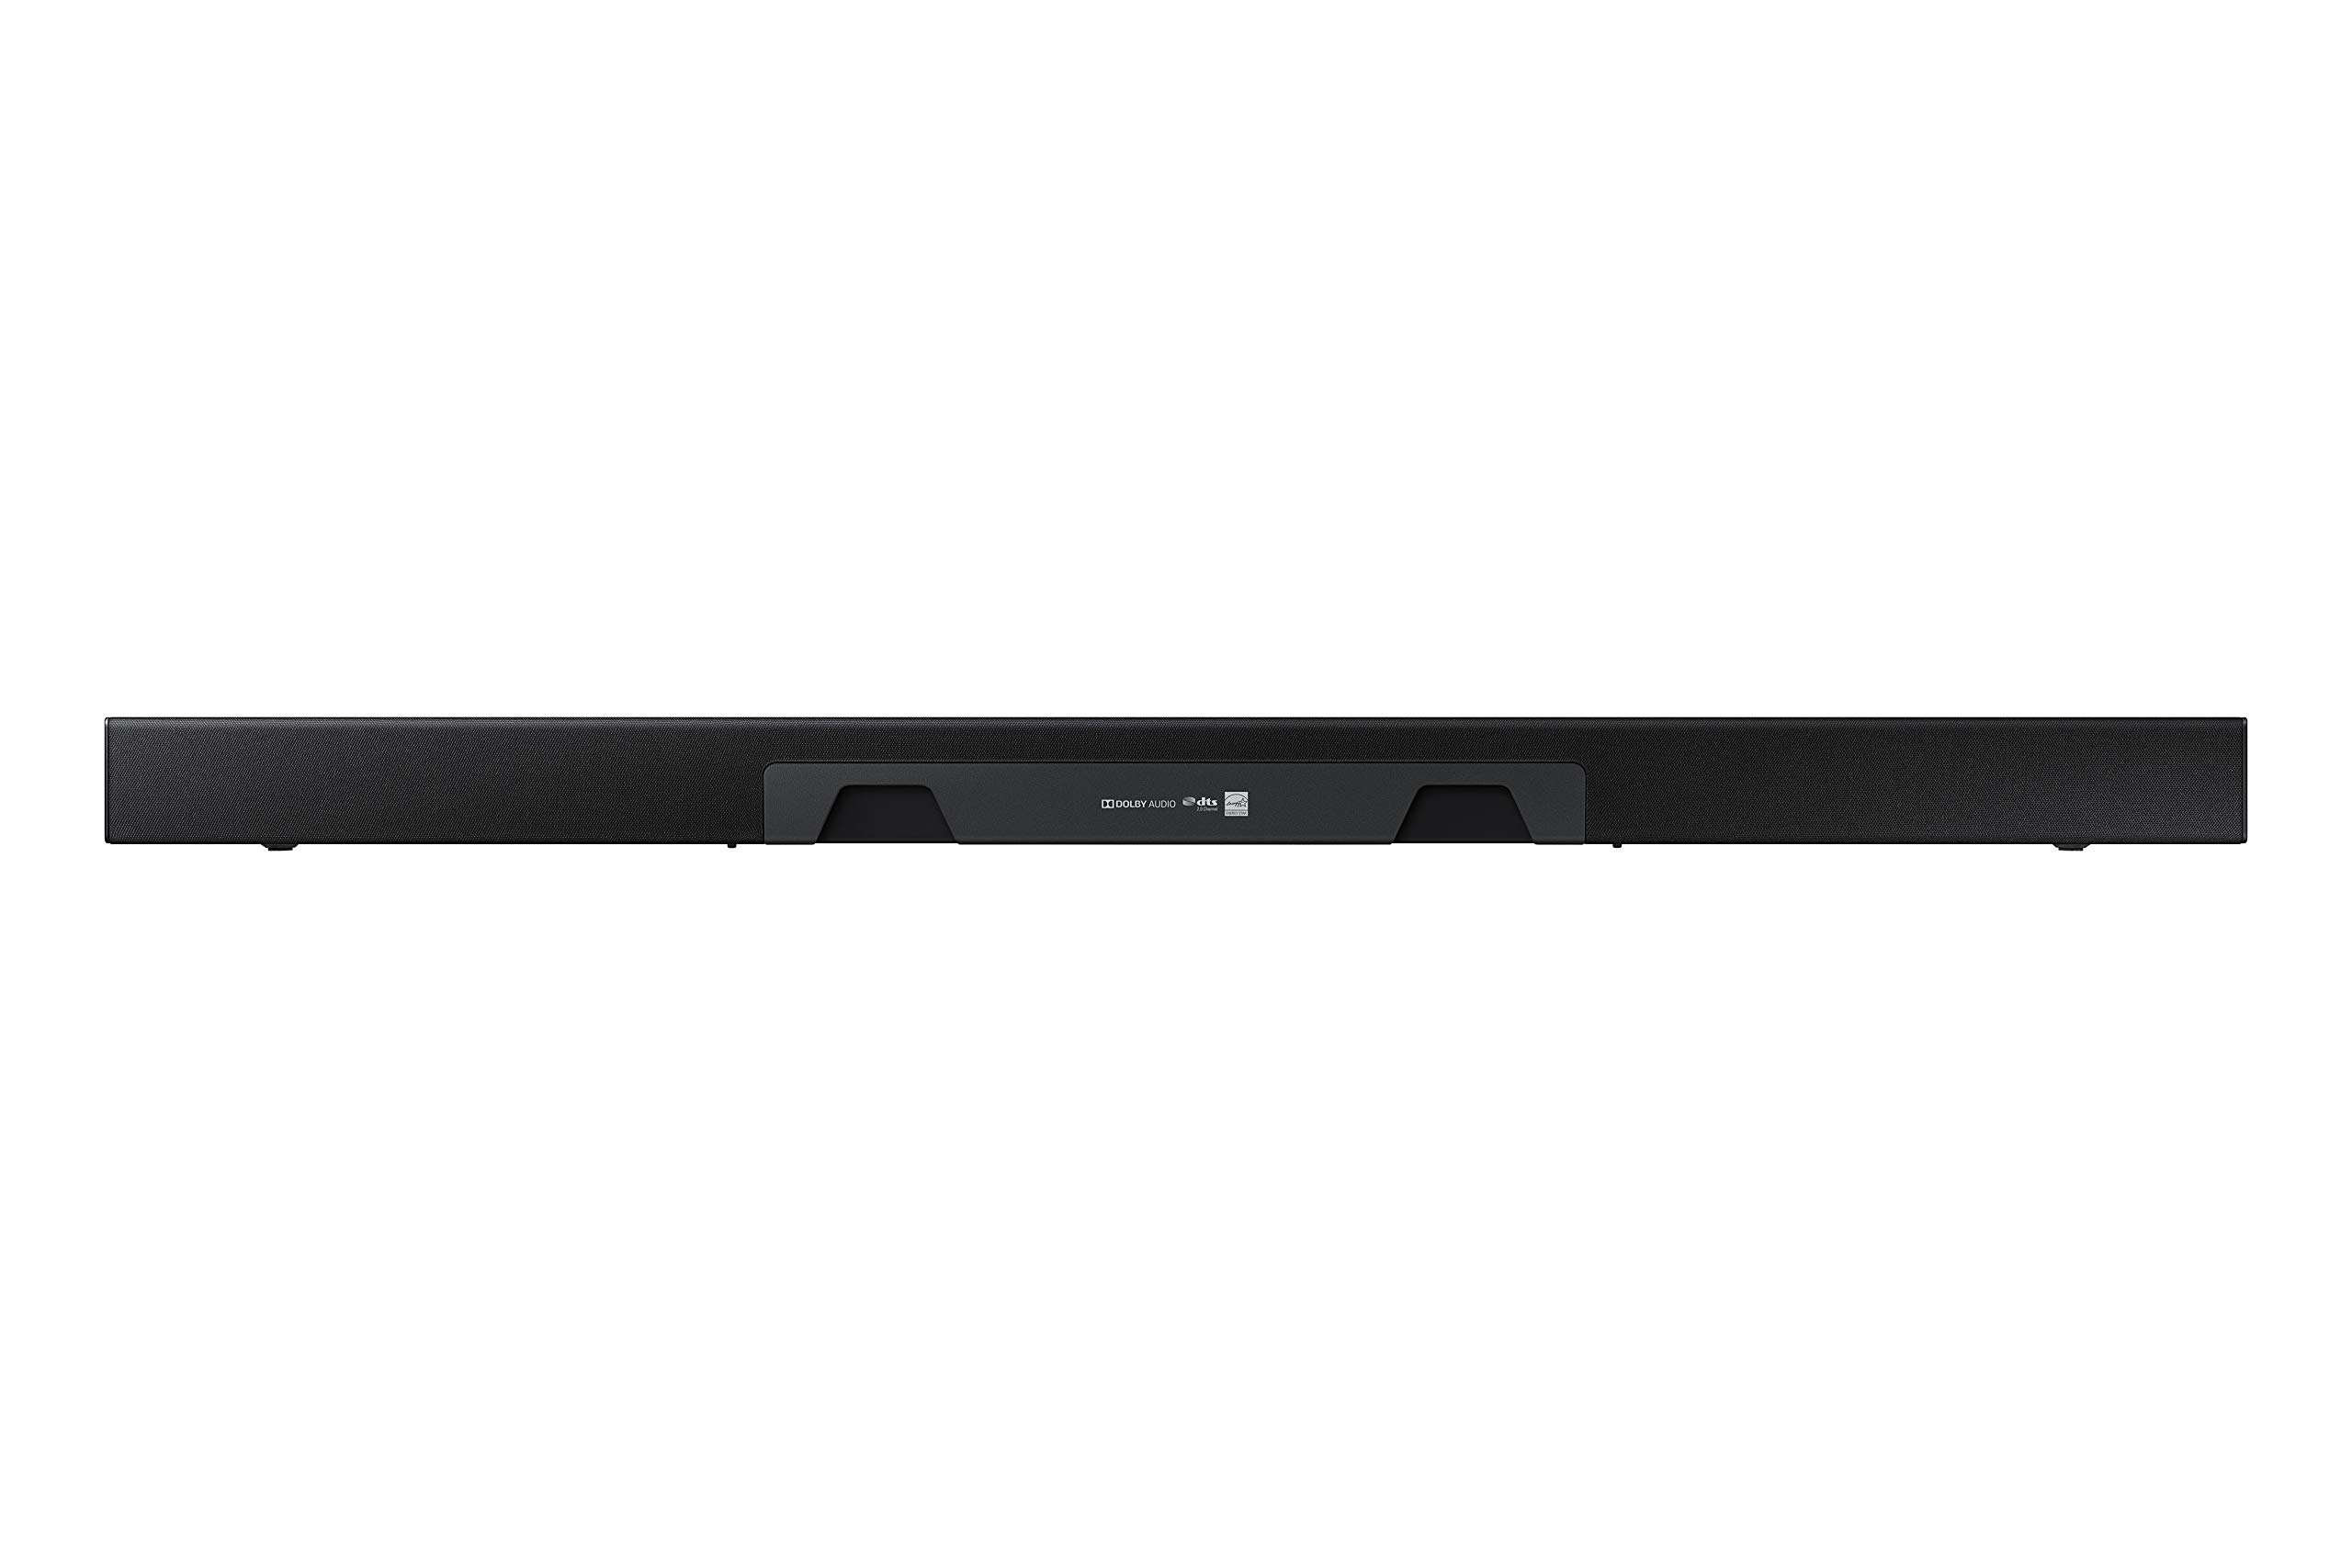 SAMSUNG HW-T450 2.1ch Soundbar with Dolby Audio (2020)